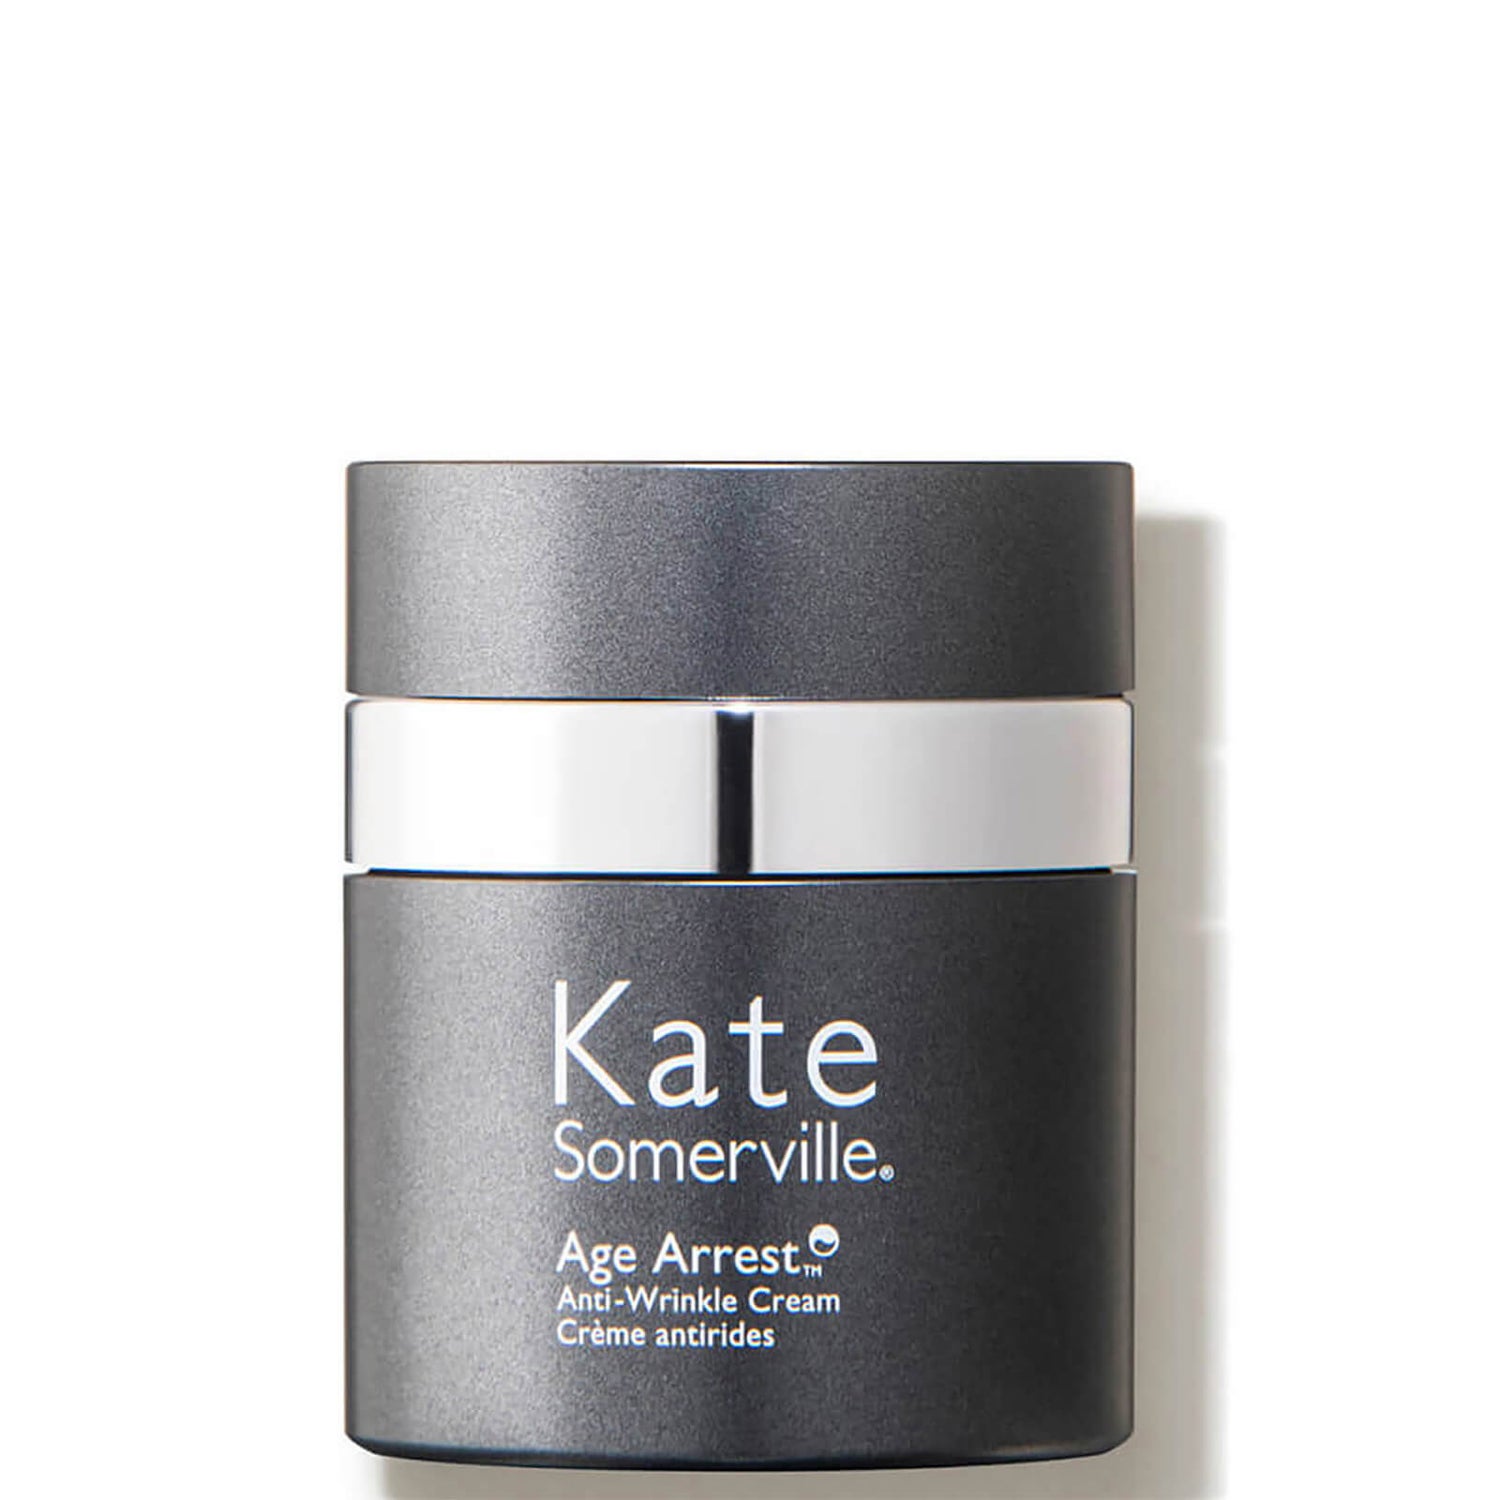 Kate Somerville Age Arrest AntiWrinkle Cream (1.7 fl. oz.)